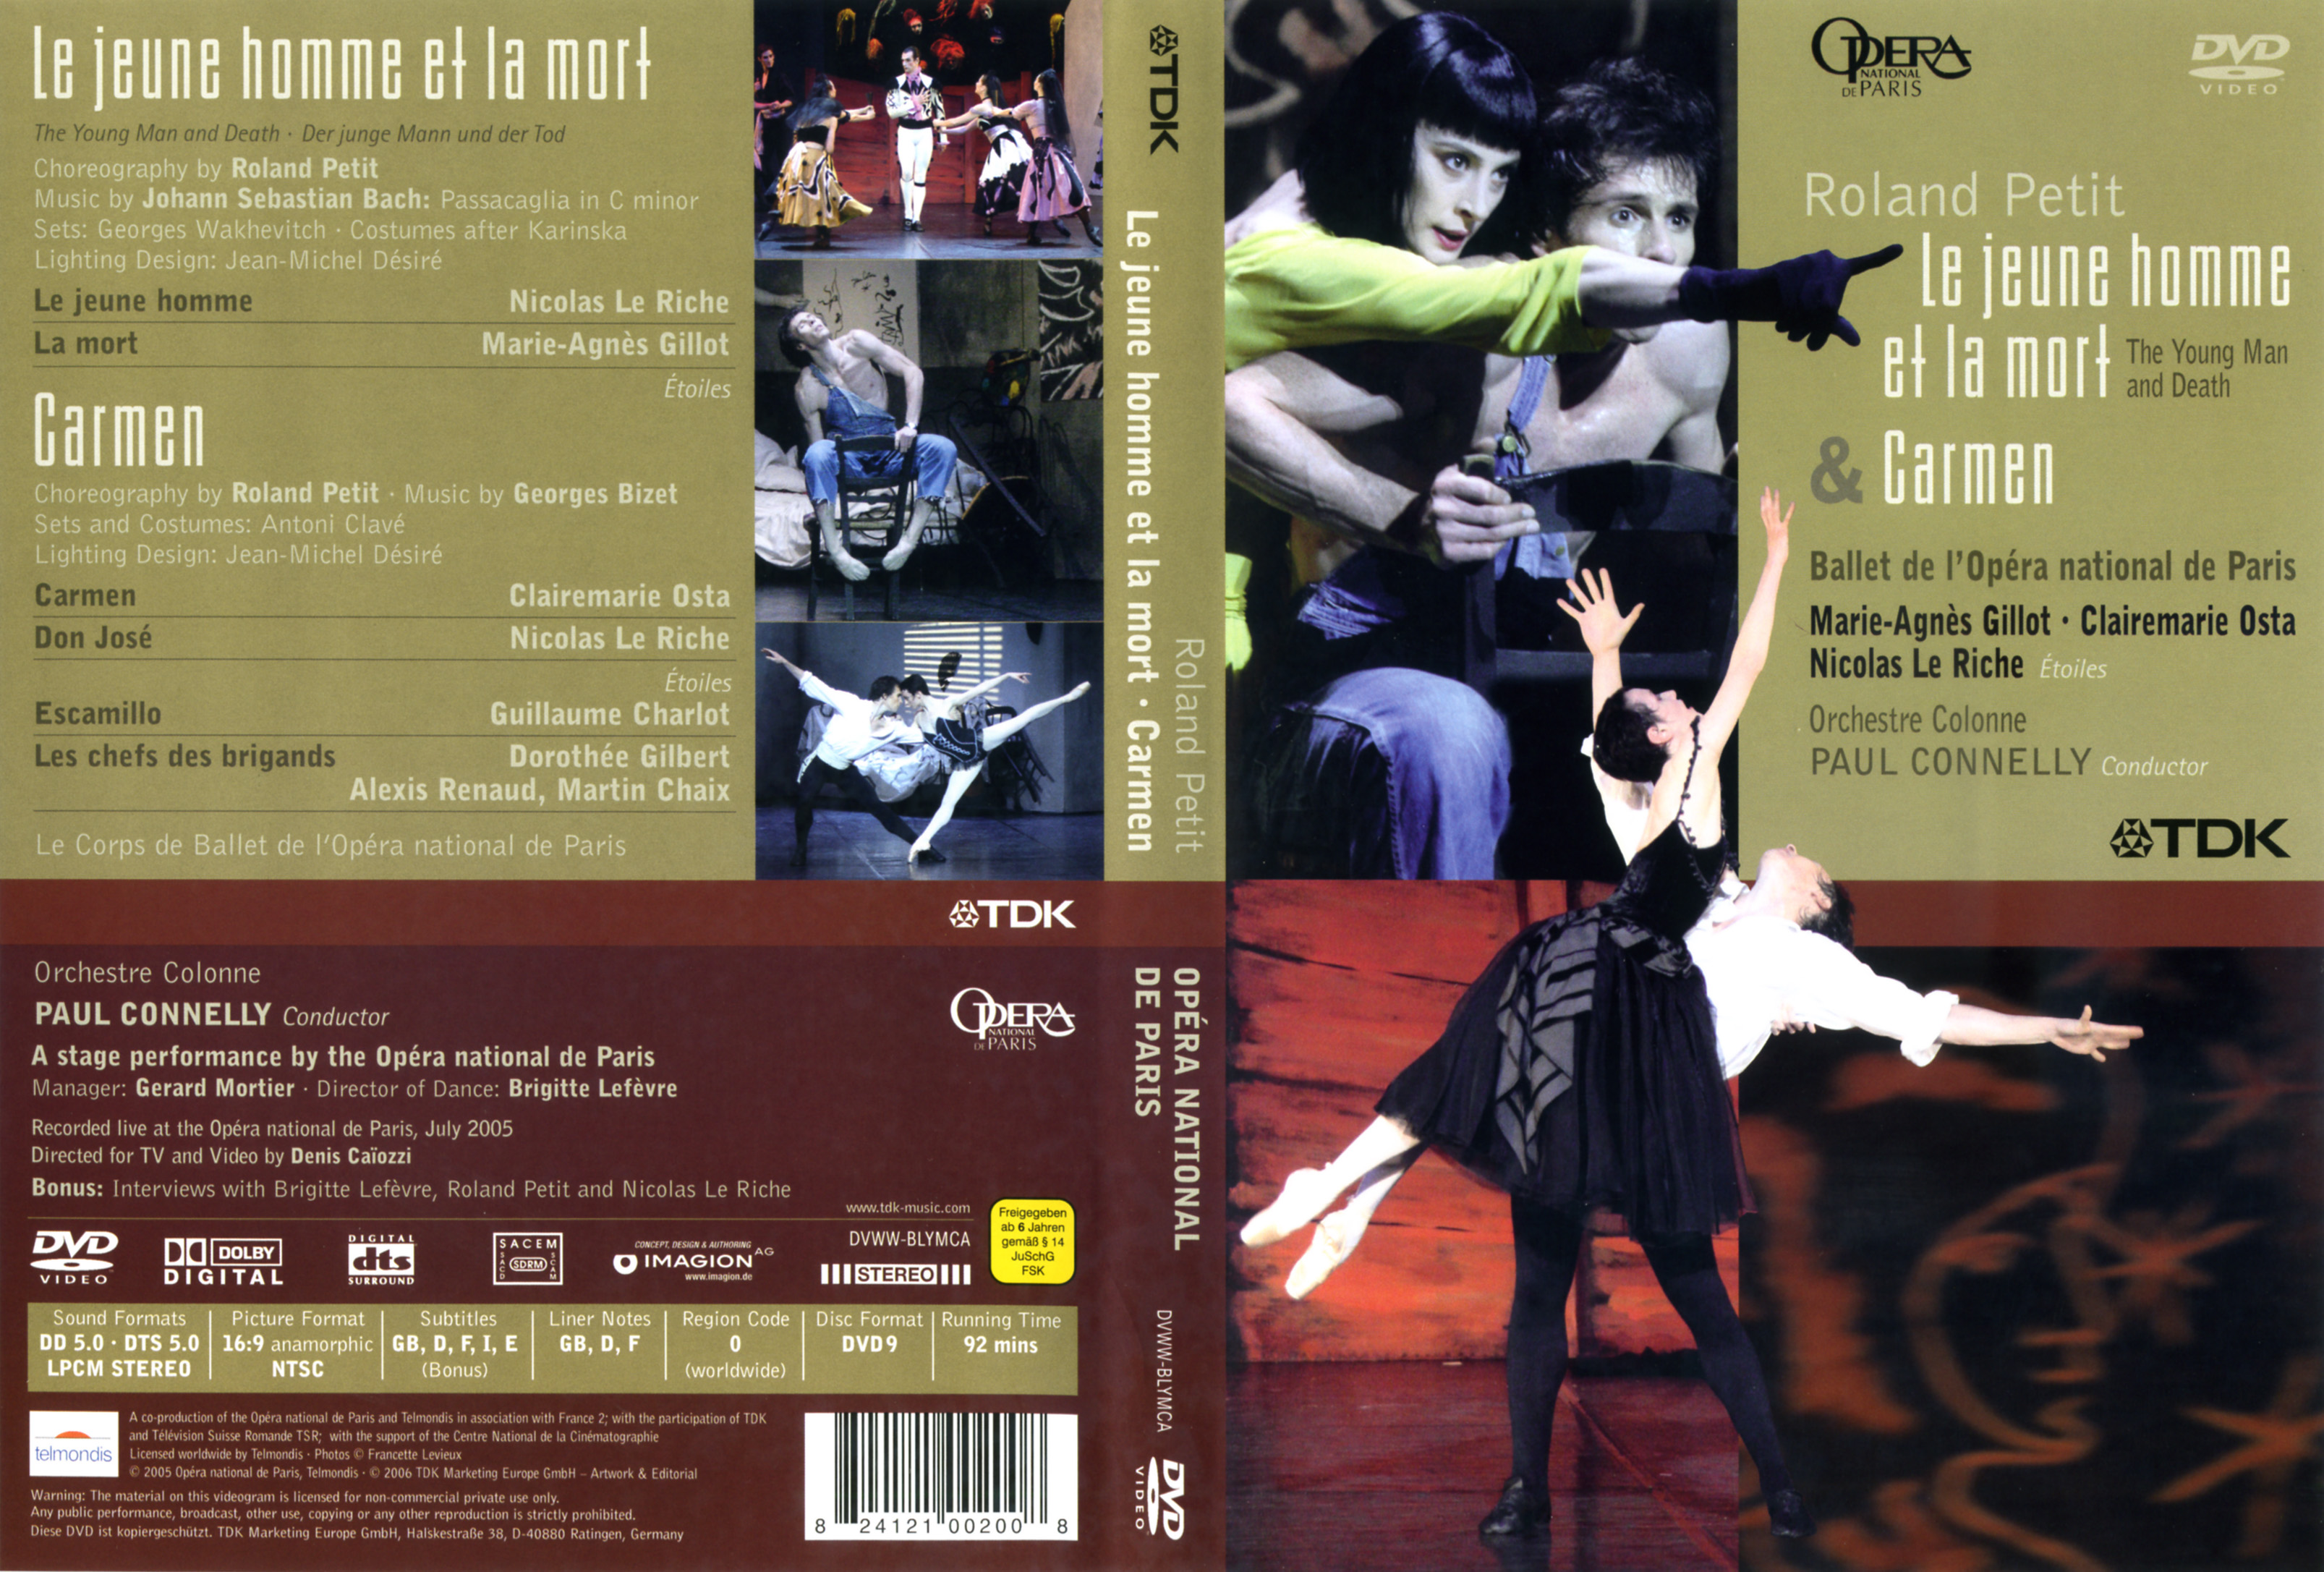 Jaquette DVD Le jeune homme et la mort + Carmen